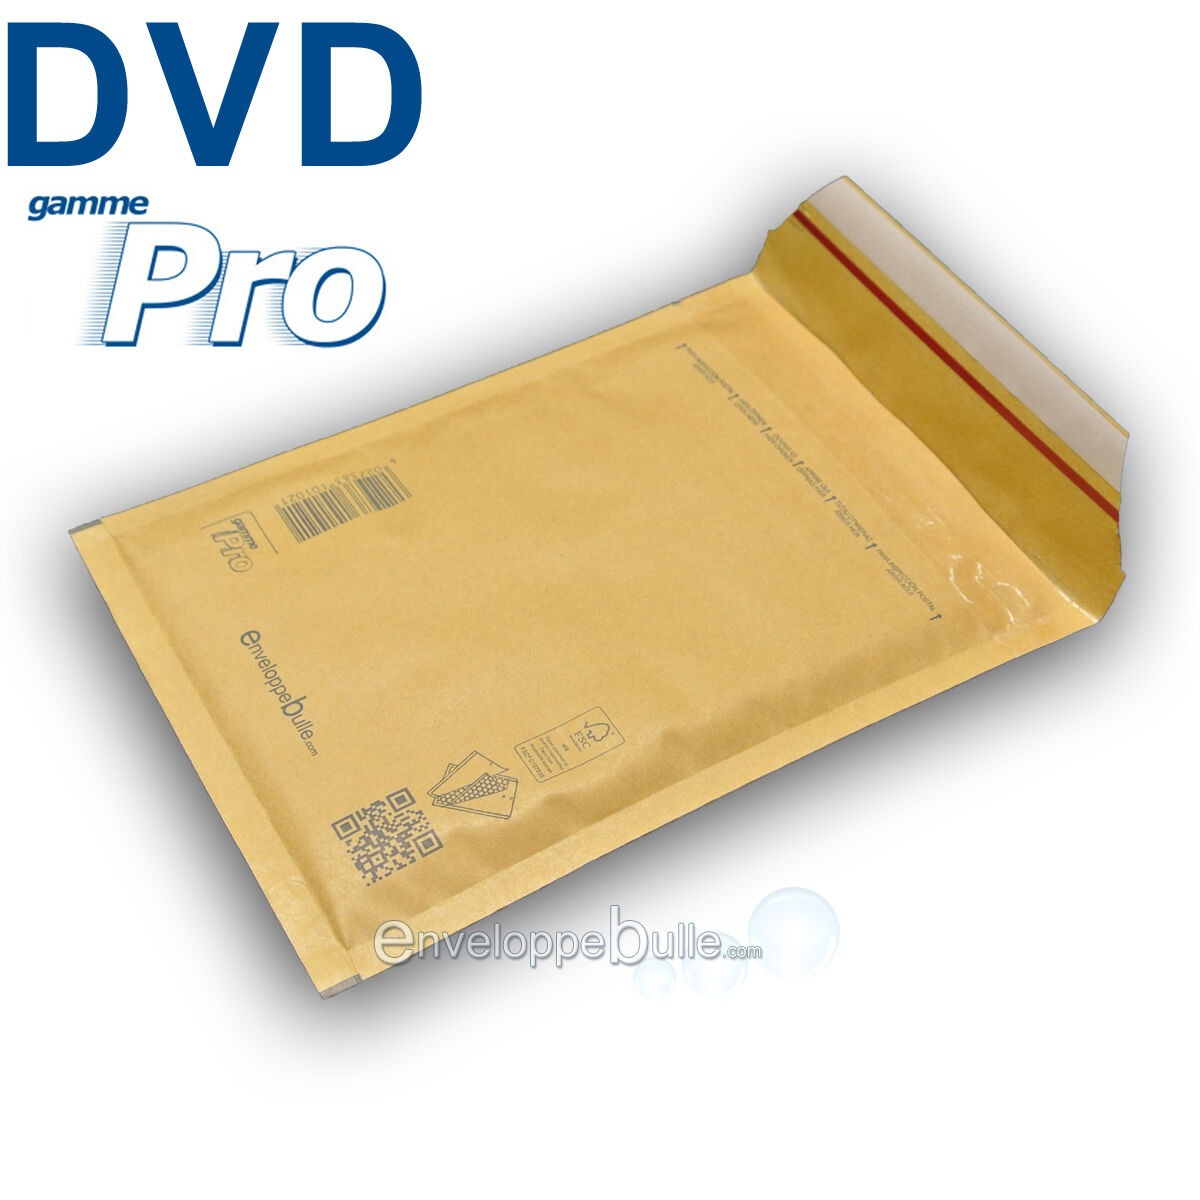 Enveloppes à bulles PRO format spécial DVD / BLURAY / JEUX VIDEOS